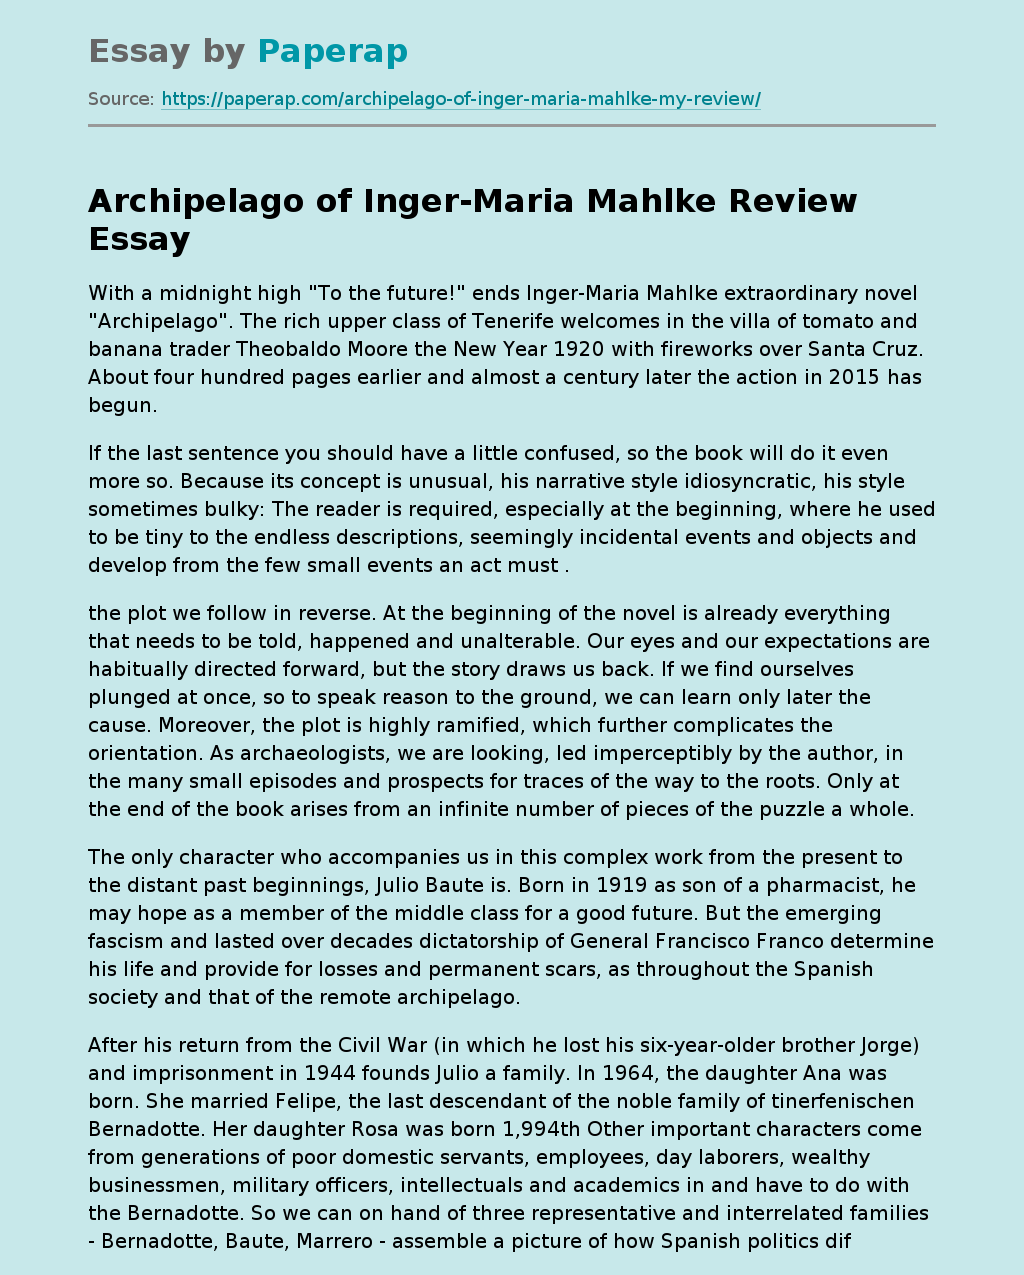 Novel "Archipelago" of Inger-Maria Mahlke